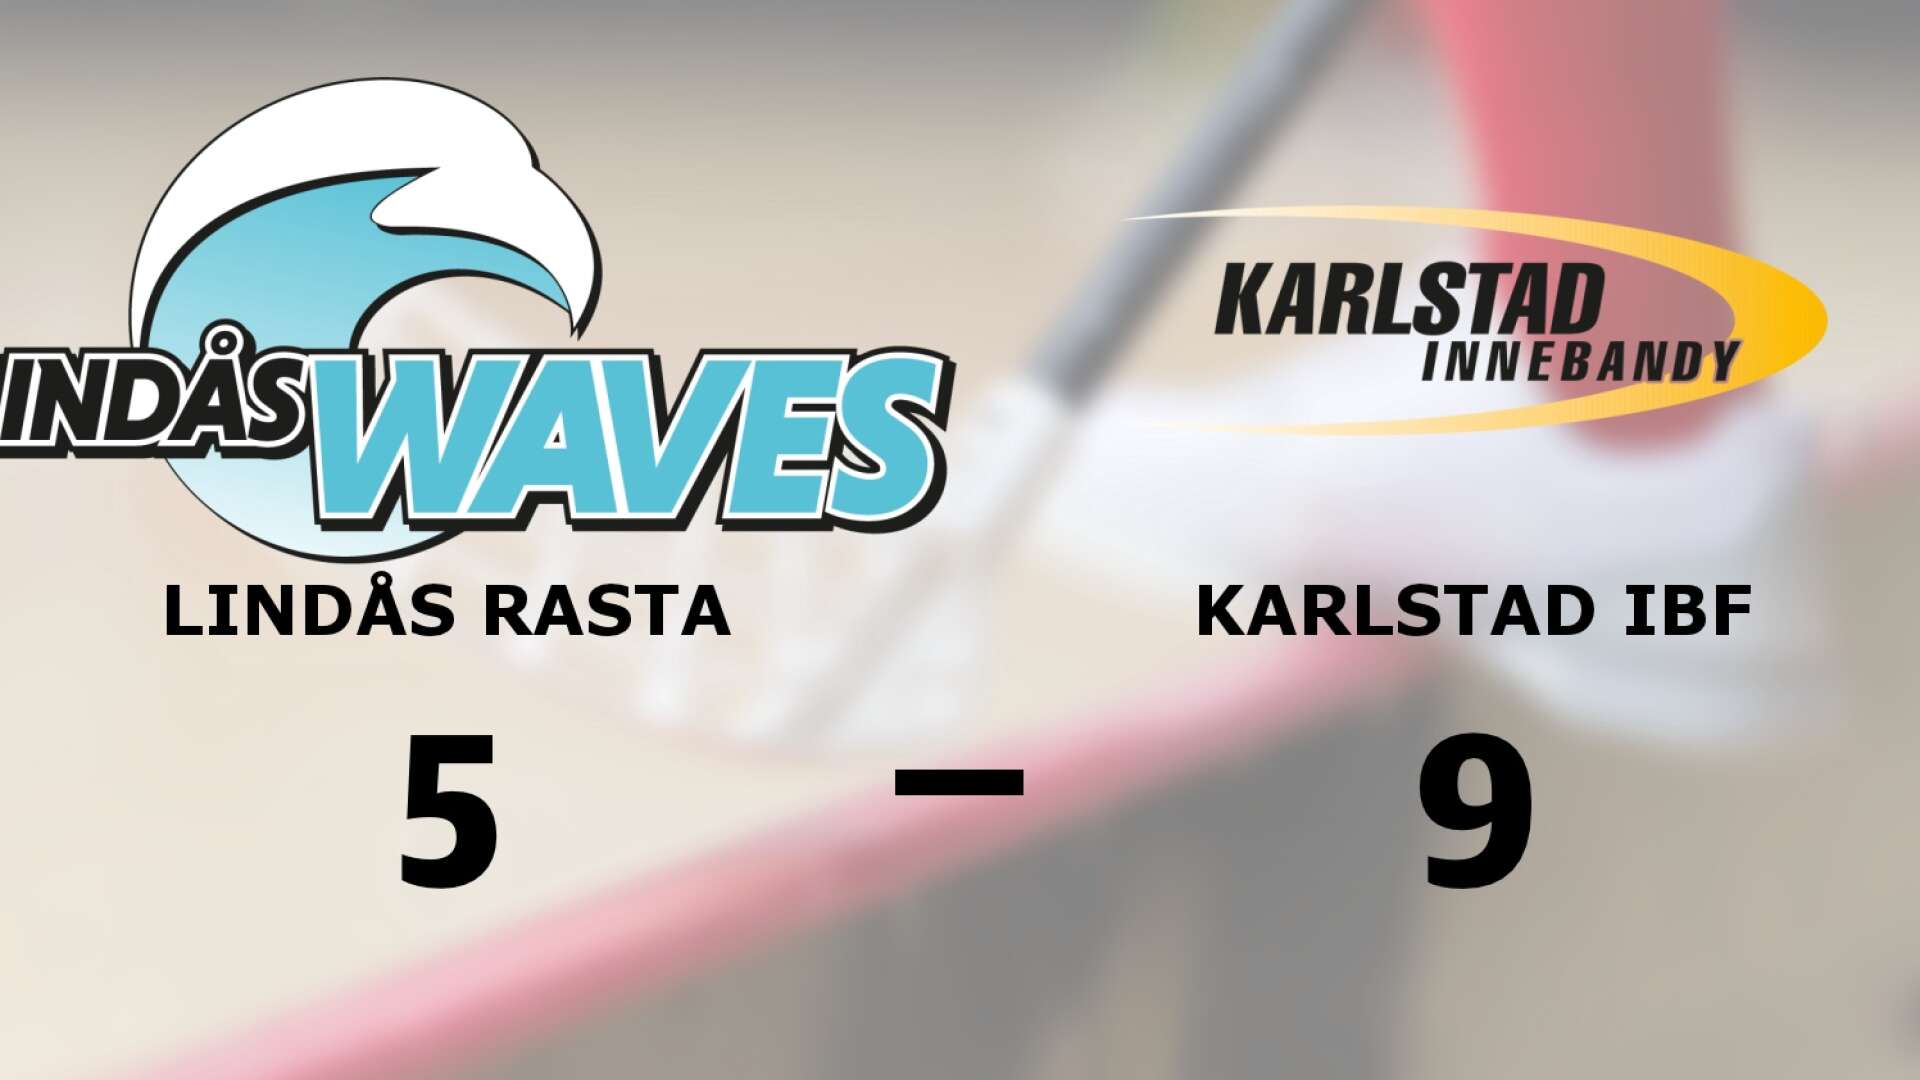 Lindås Waves IBK förlorade mot Karlstad IBF Herr